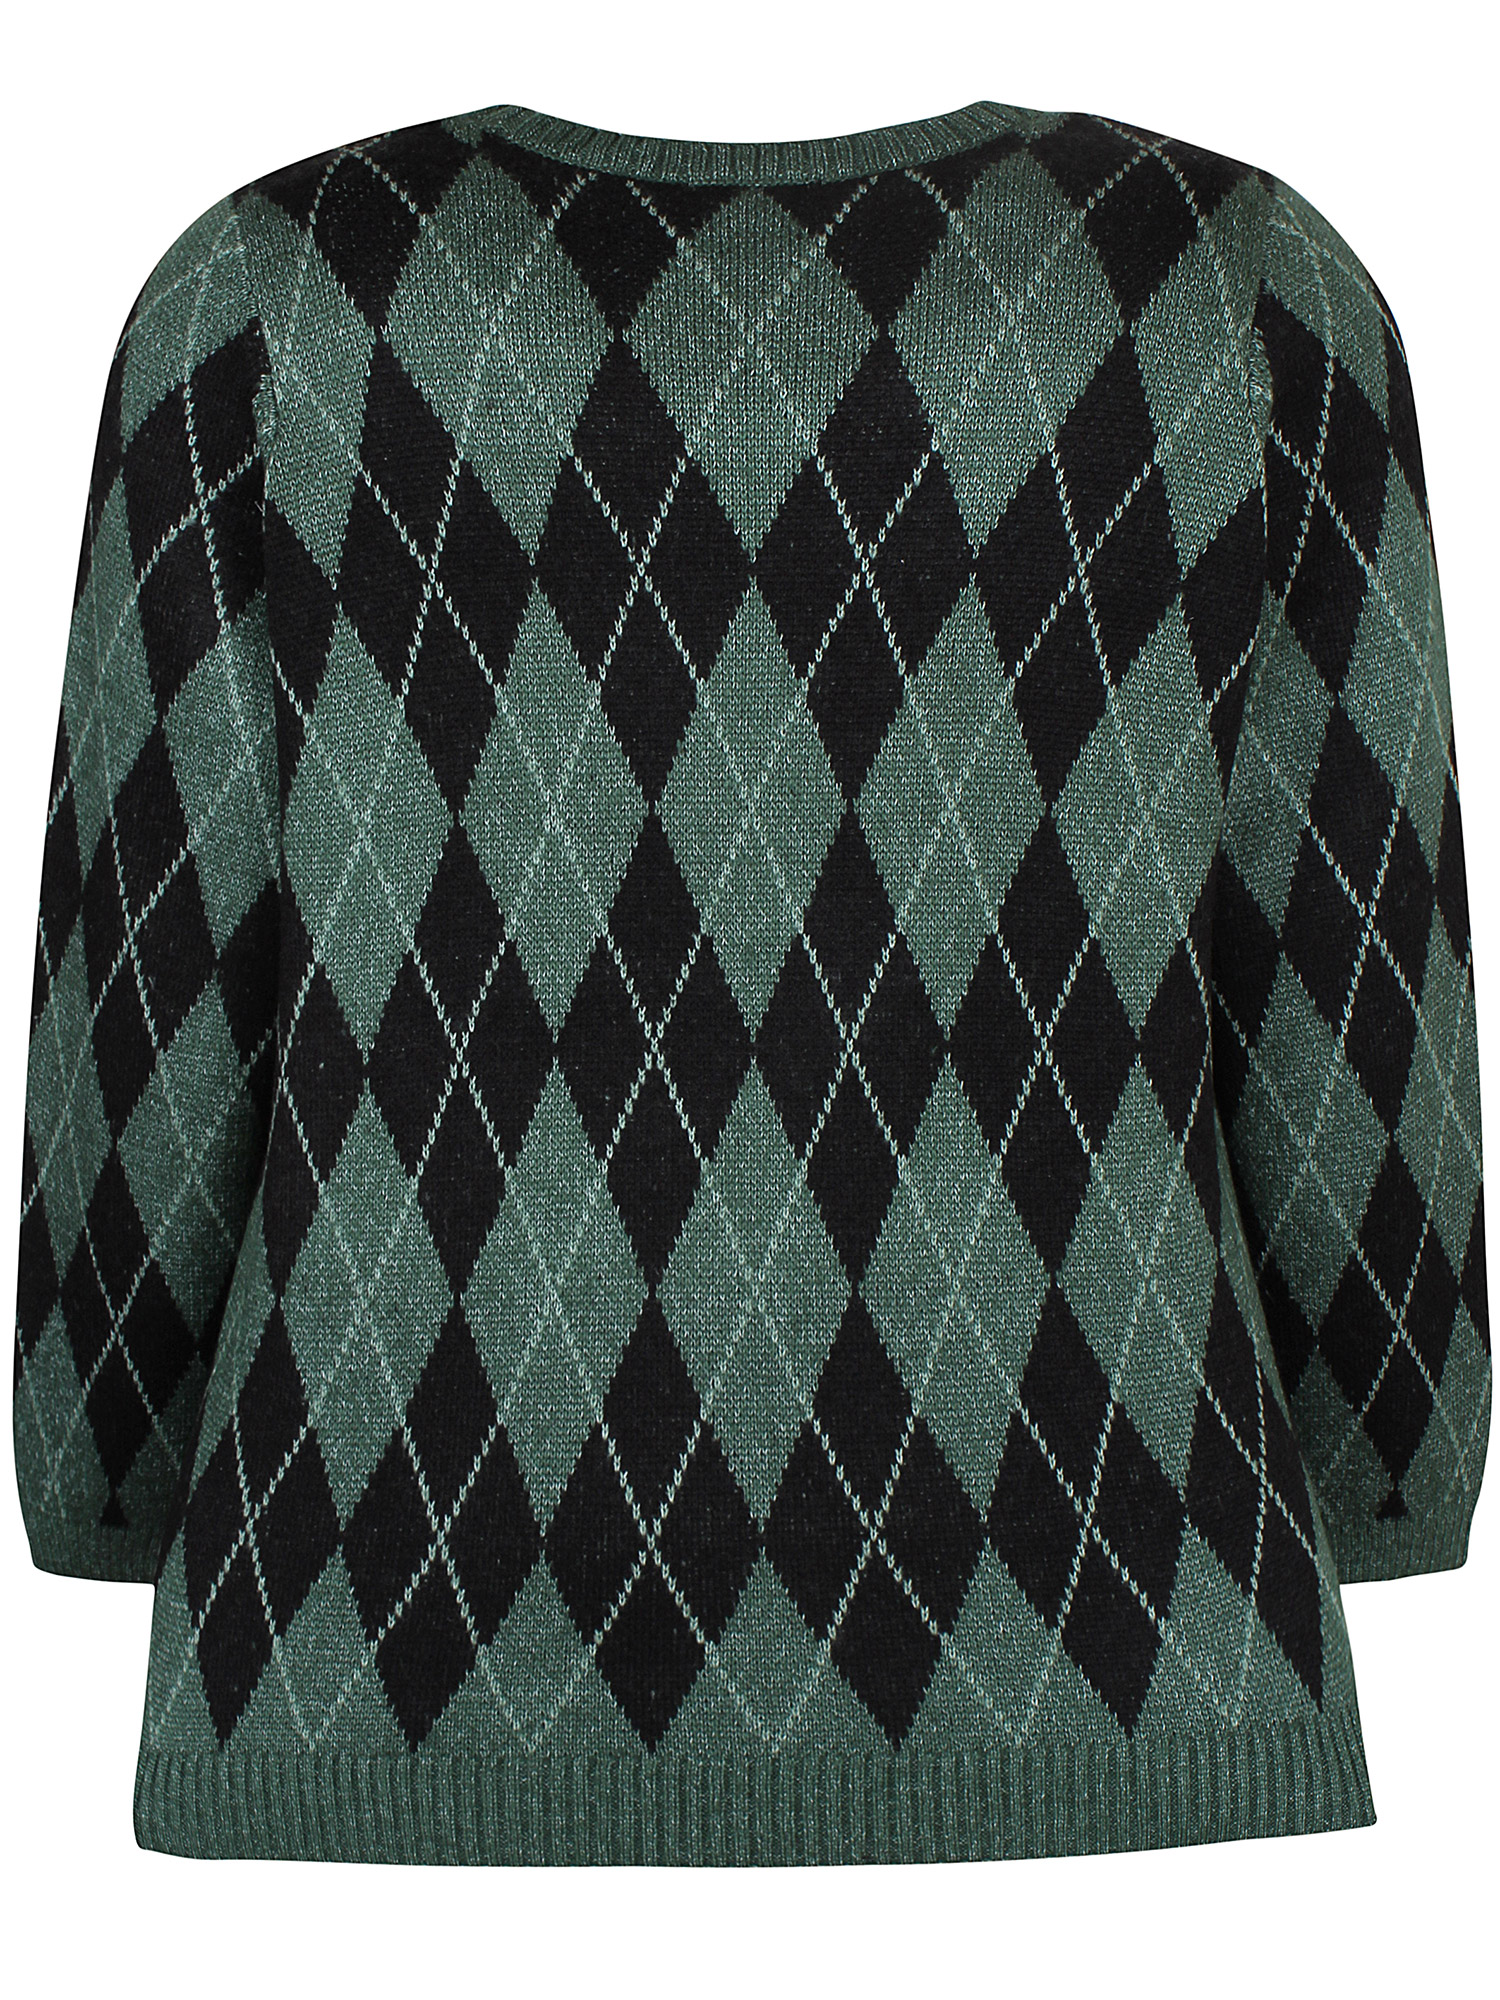 Pave - strikket genser med grønne og svarte ruter fra Zhenzi